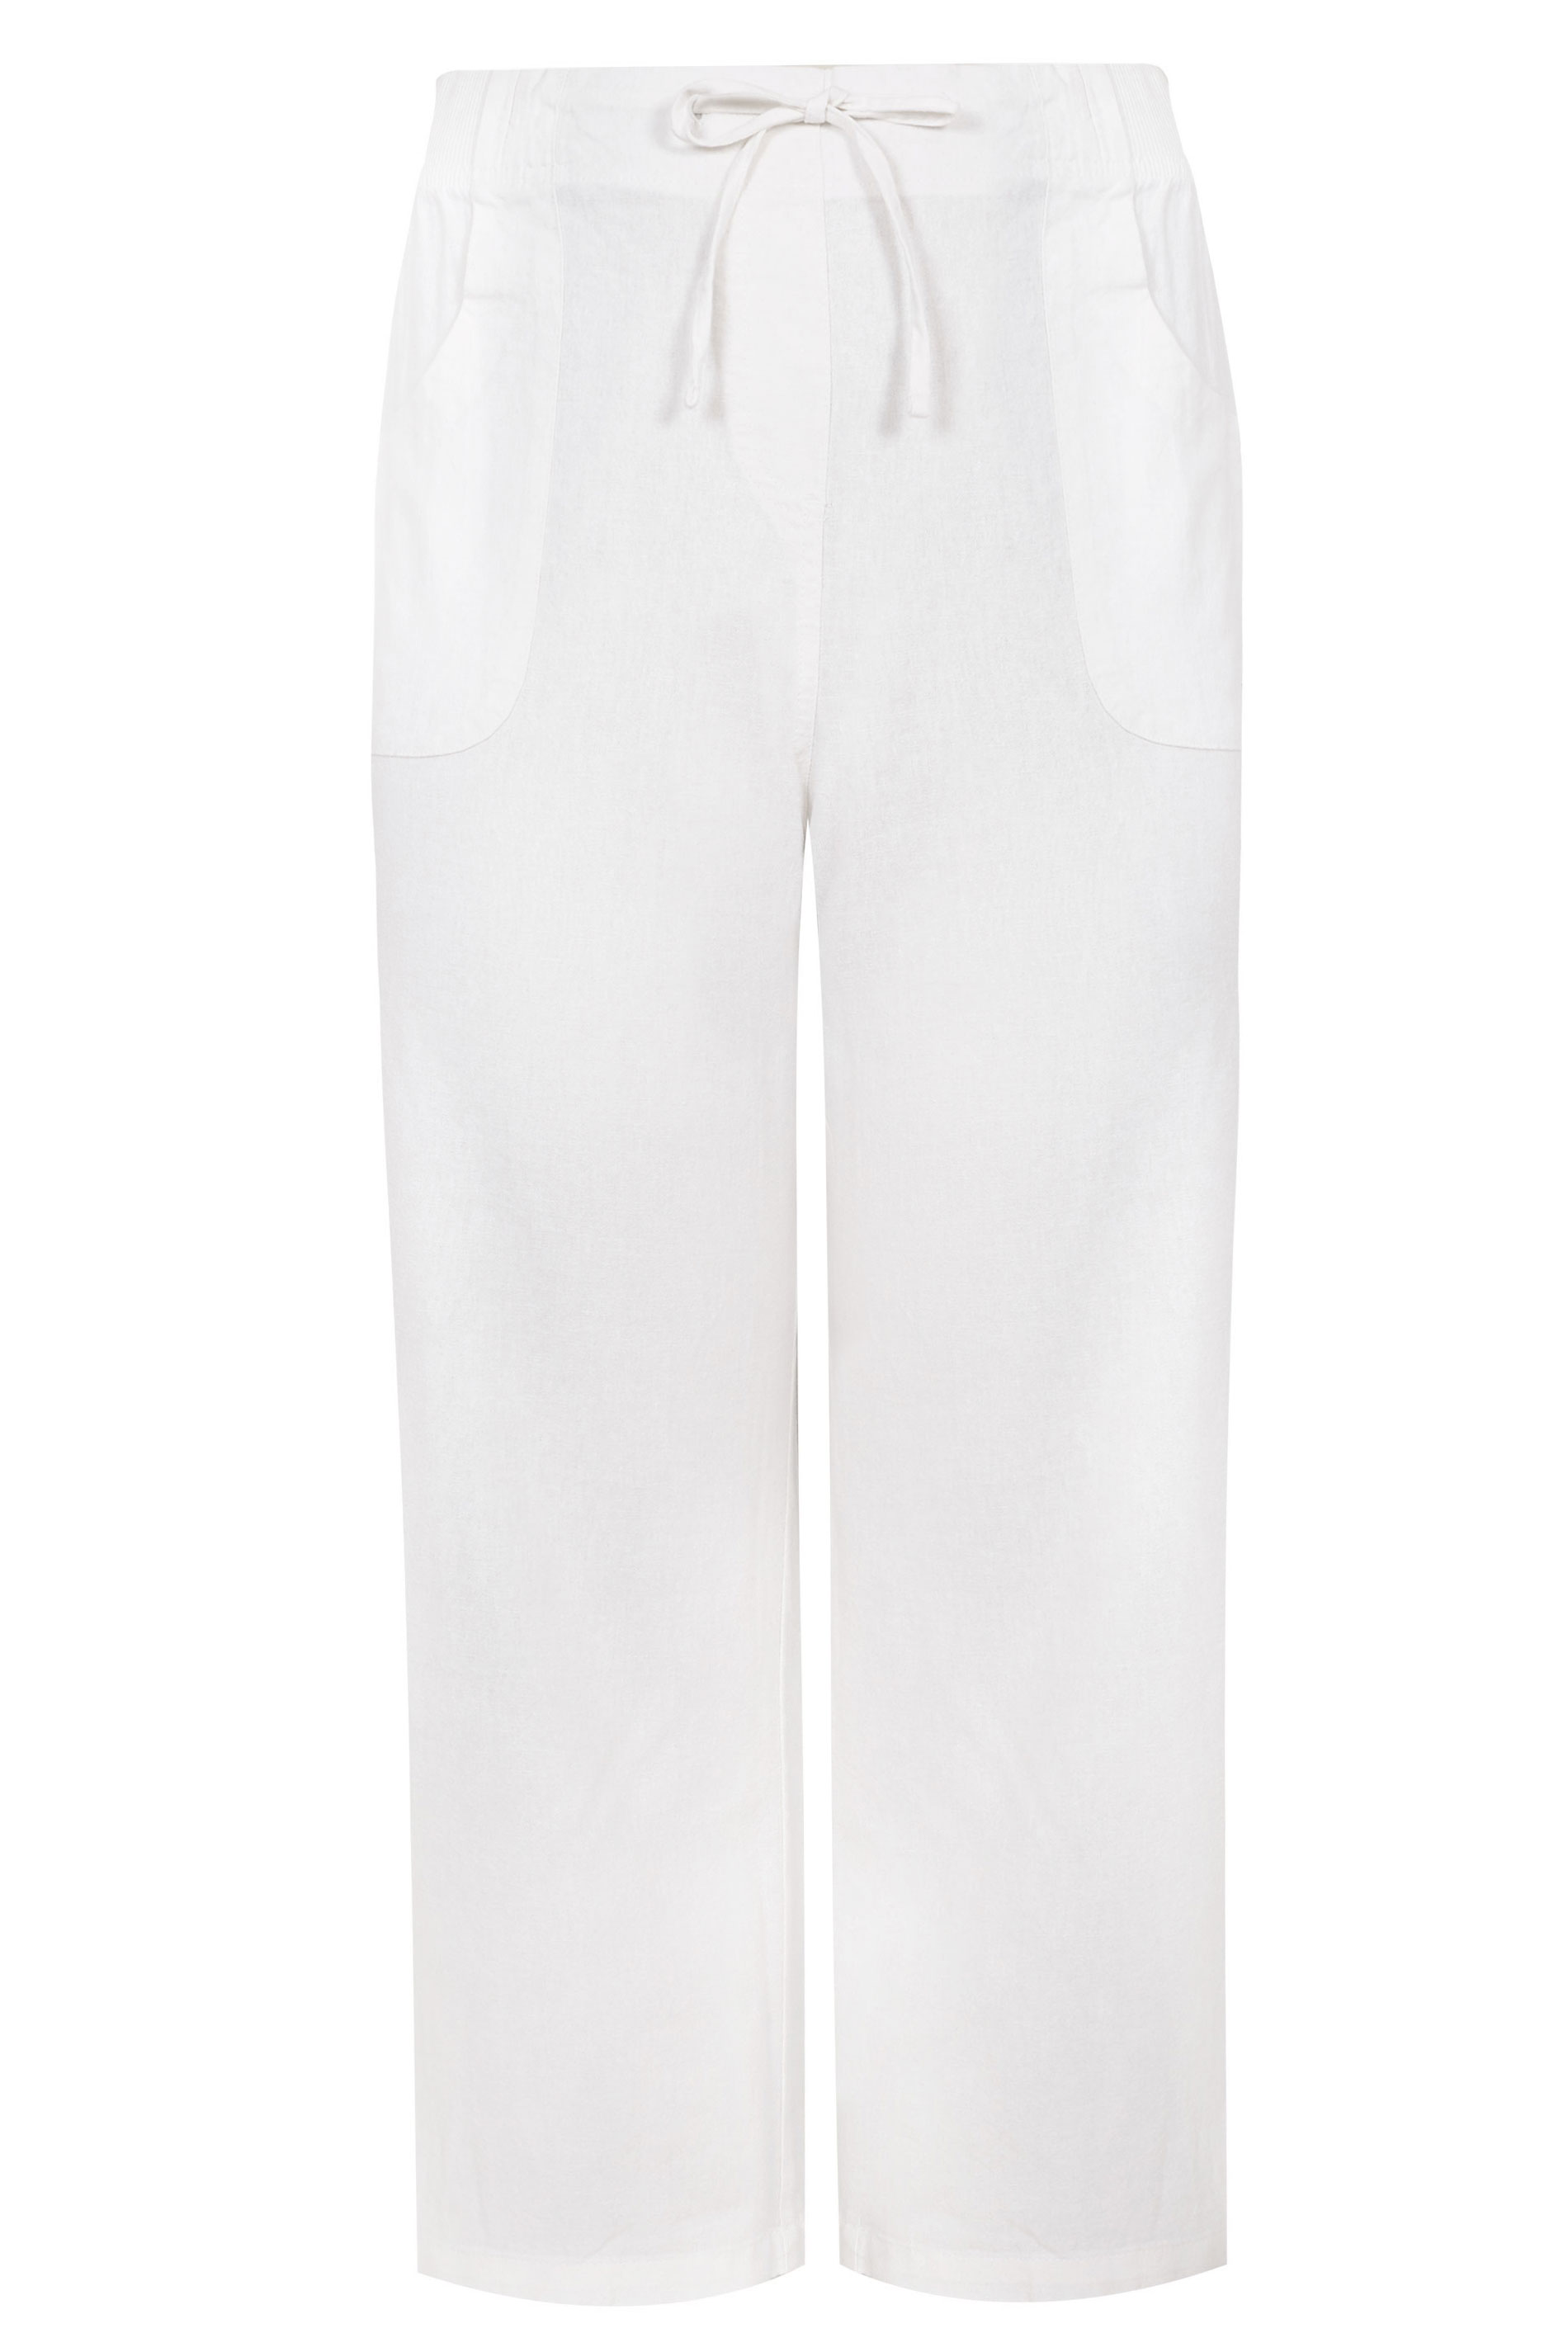 LTS White Linen Blend Wide Leg Trousers | Long Tall Sally